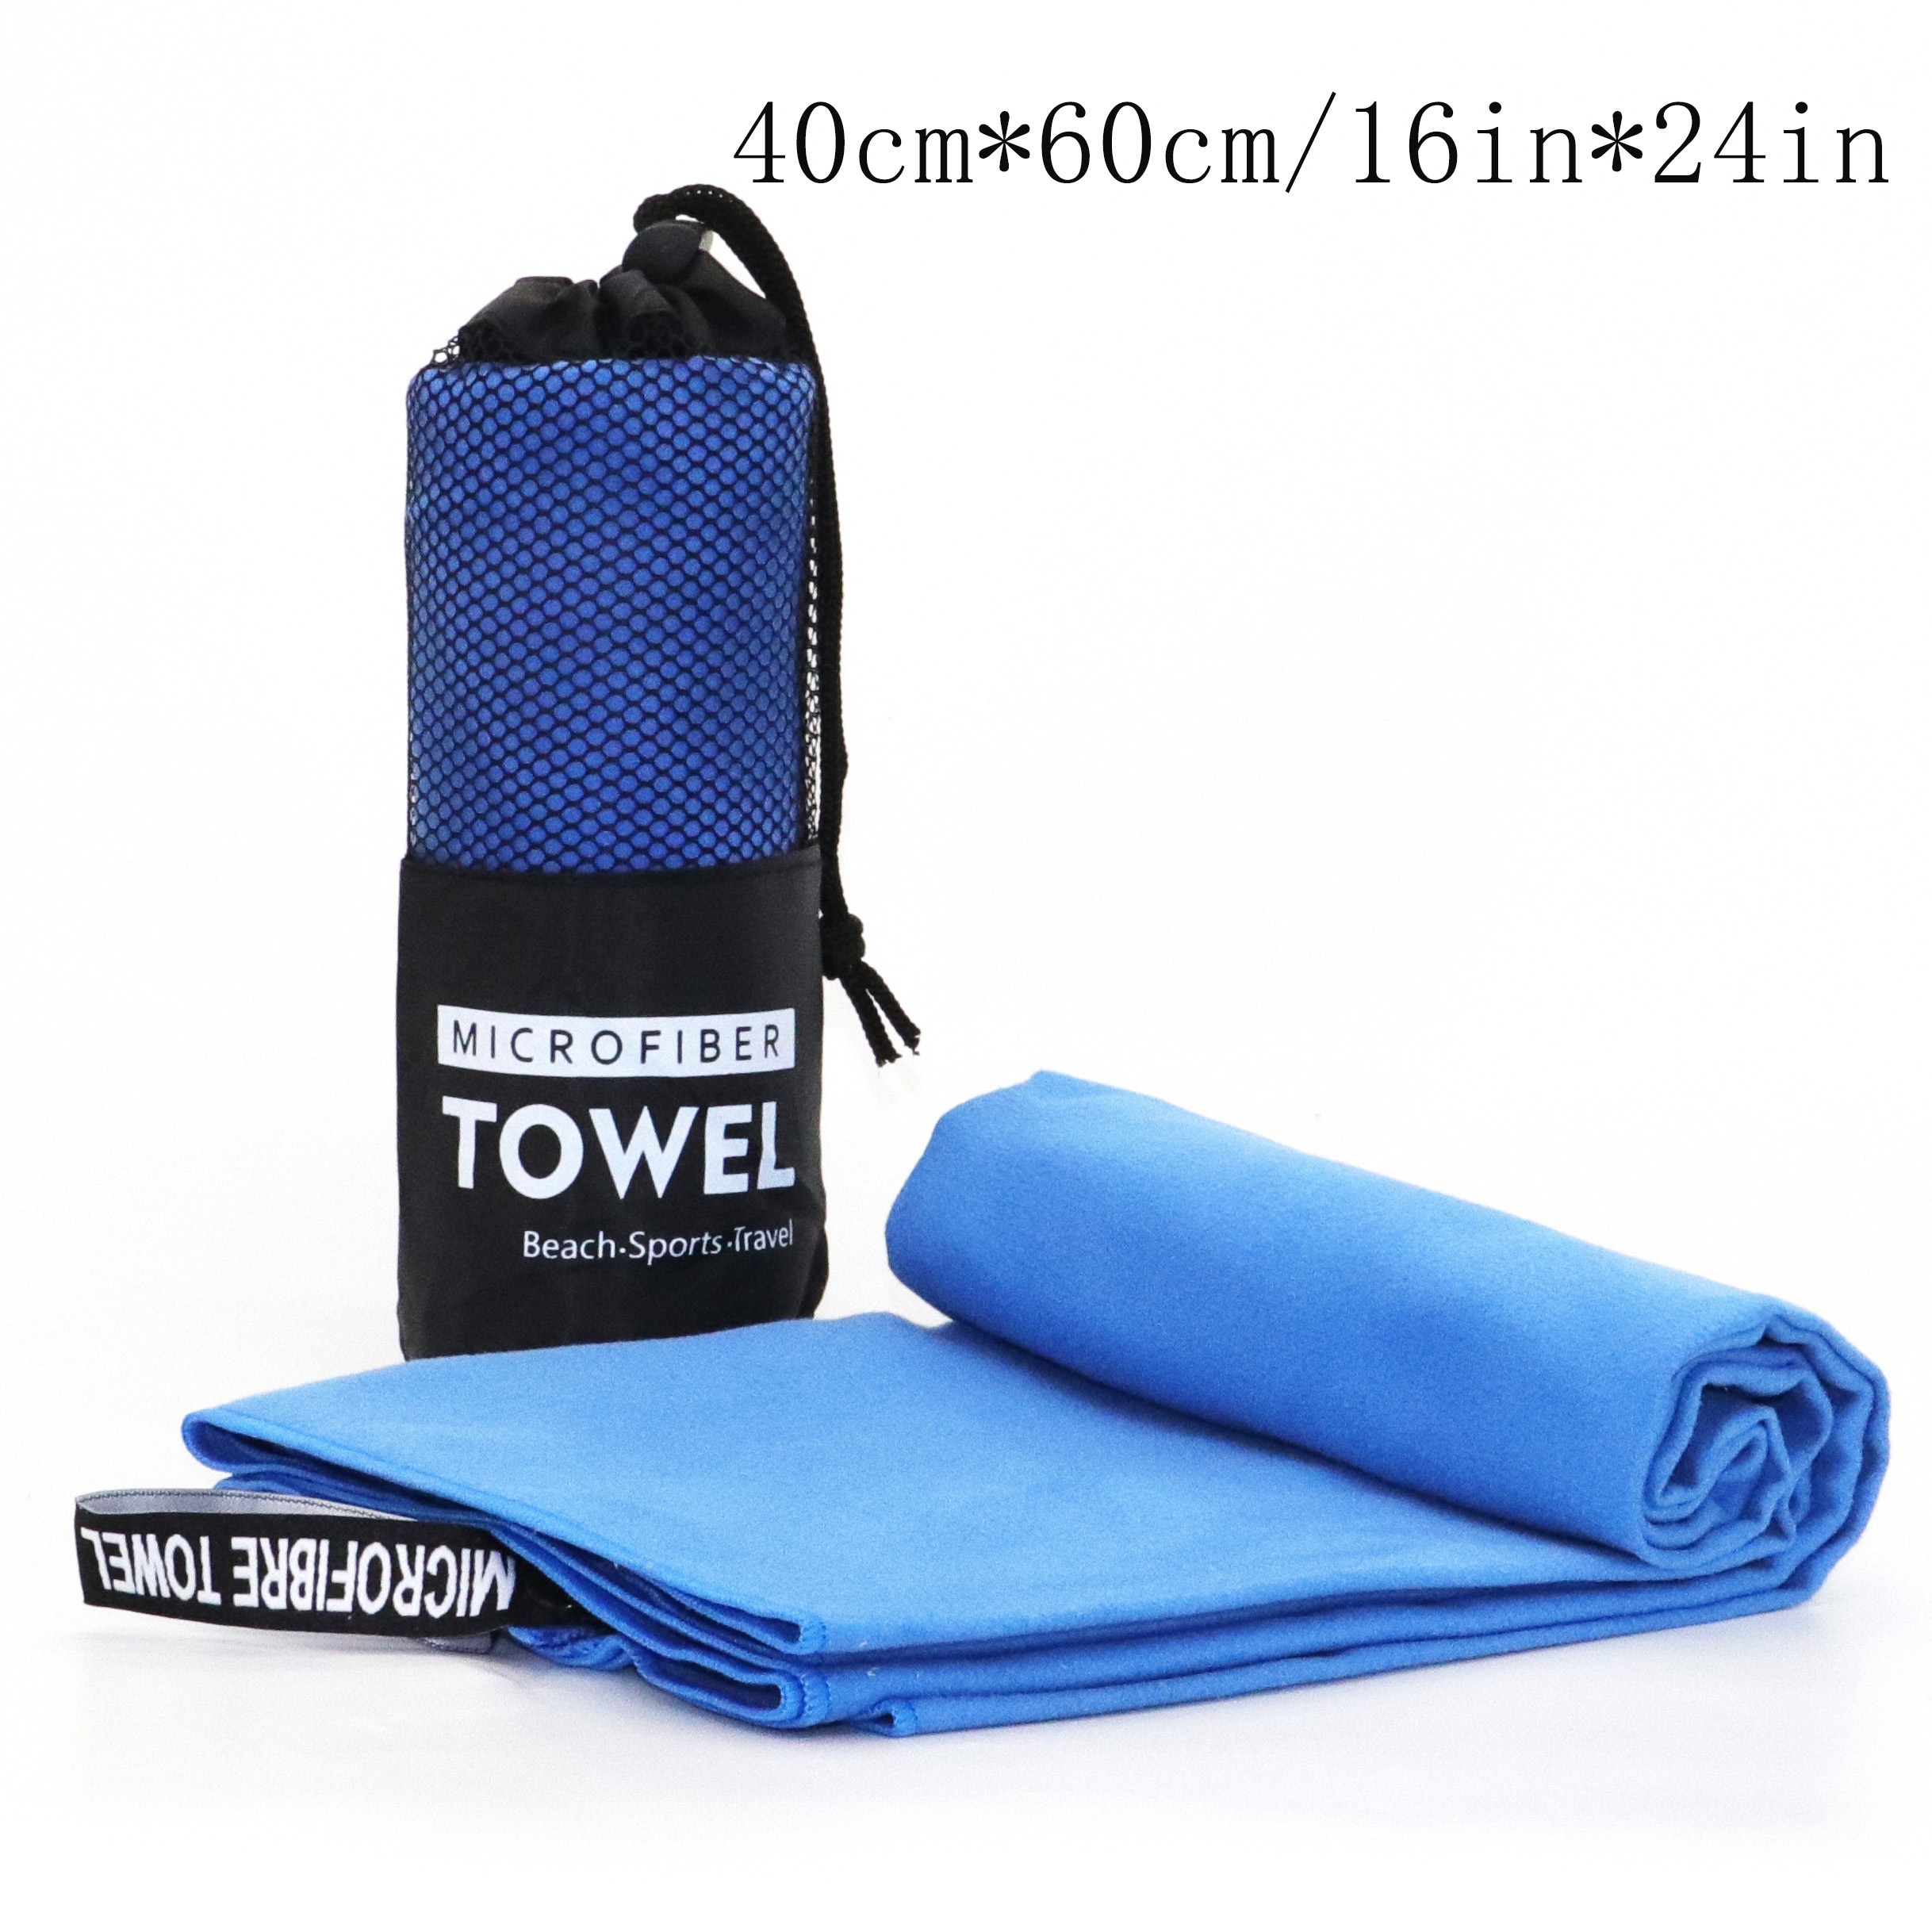 Rainleaf Microfiber Gym/Sports/travel/bath Towel-Super Absorb